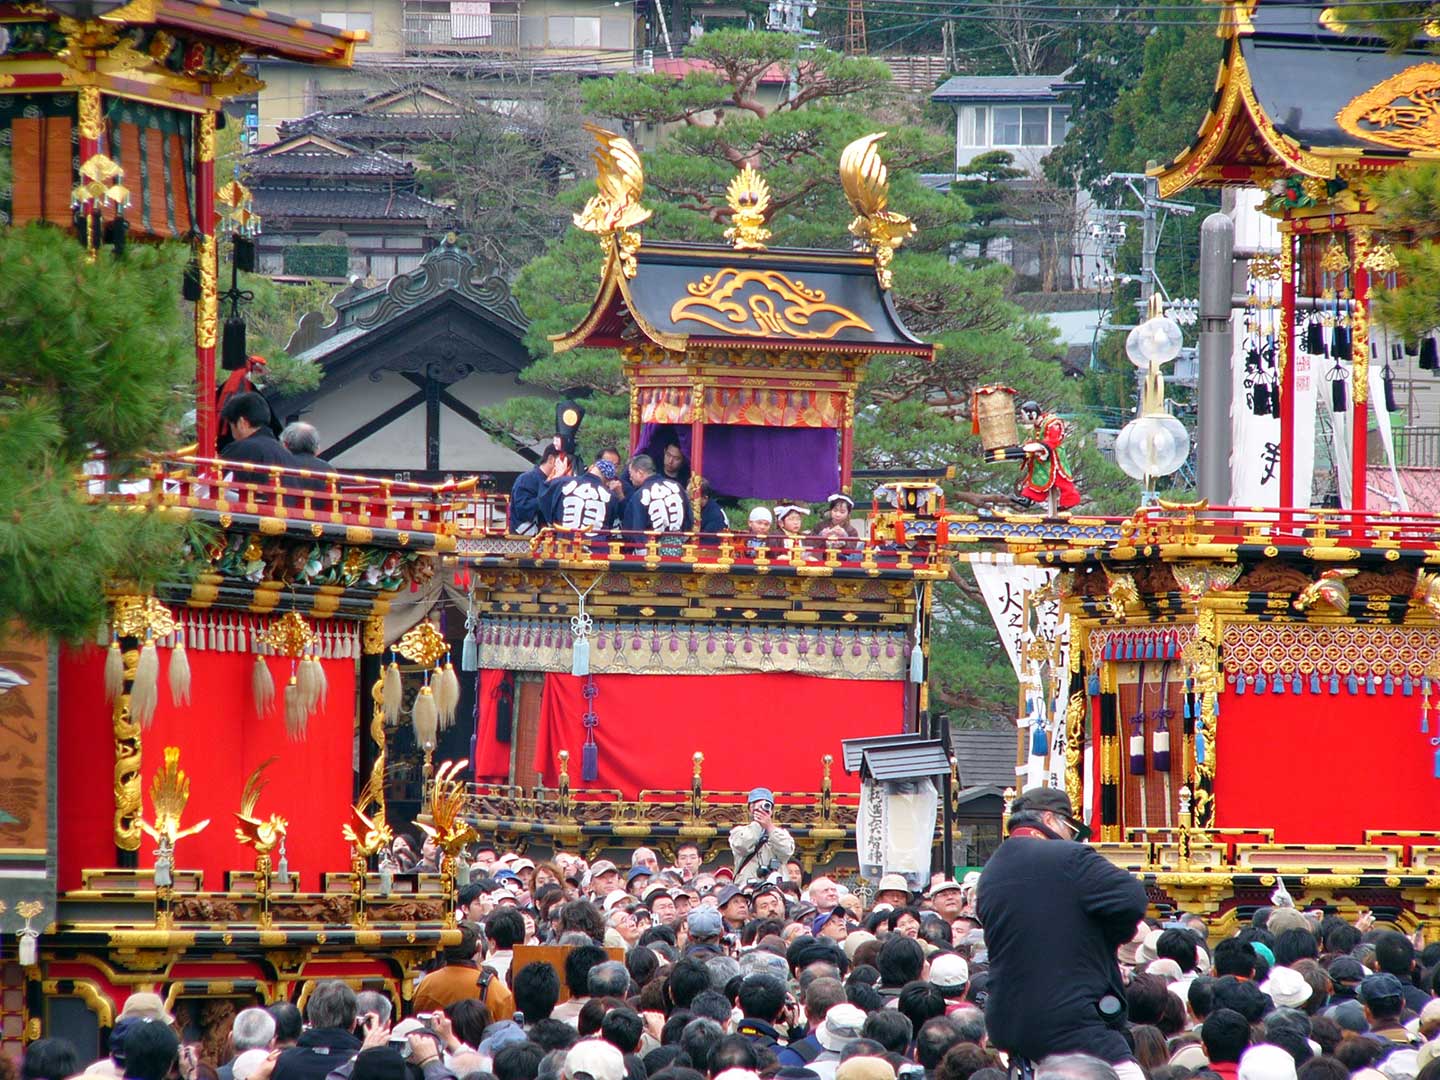 ทาคายามะ มัตสึริ (高山祭り) หนึ่งในเทศกาลที่มีชื่อเสียงที่สุดในญี่ปุ่น